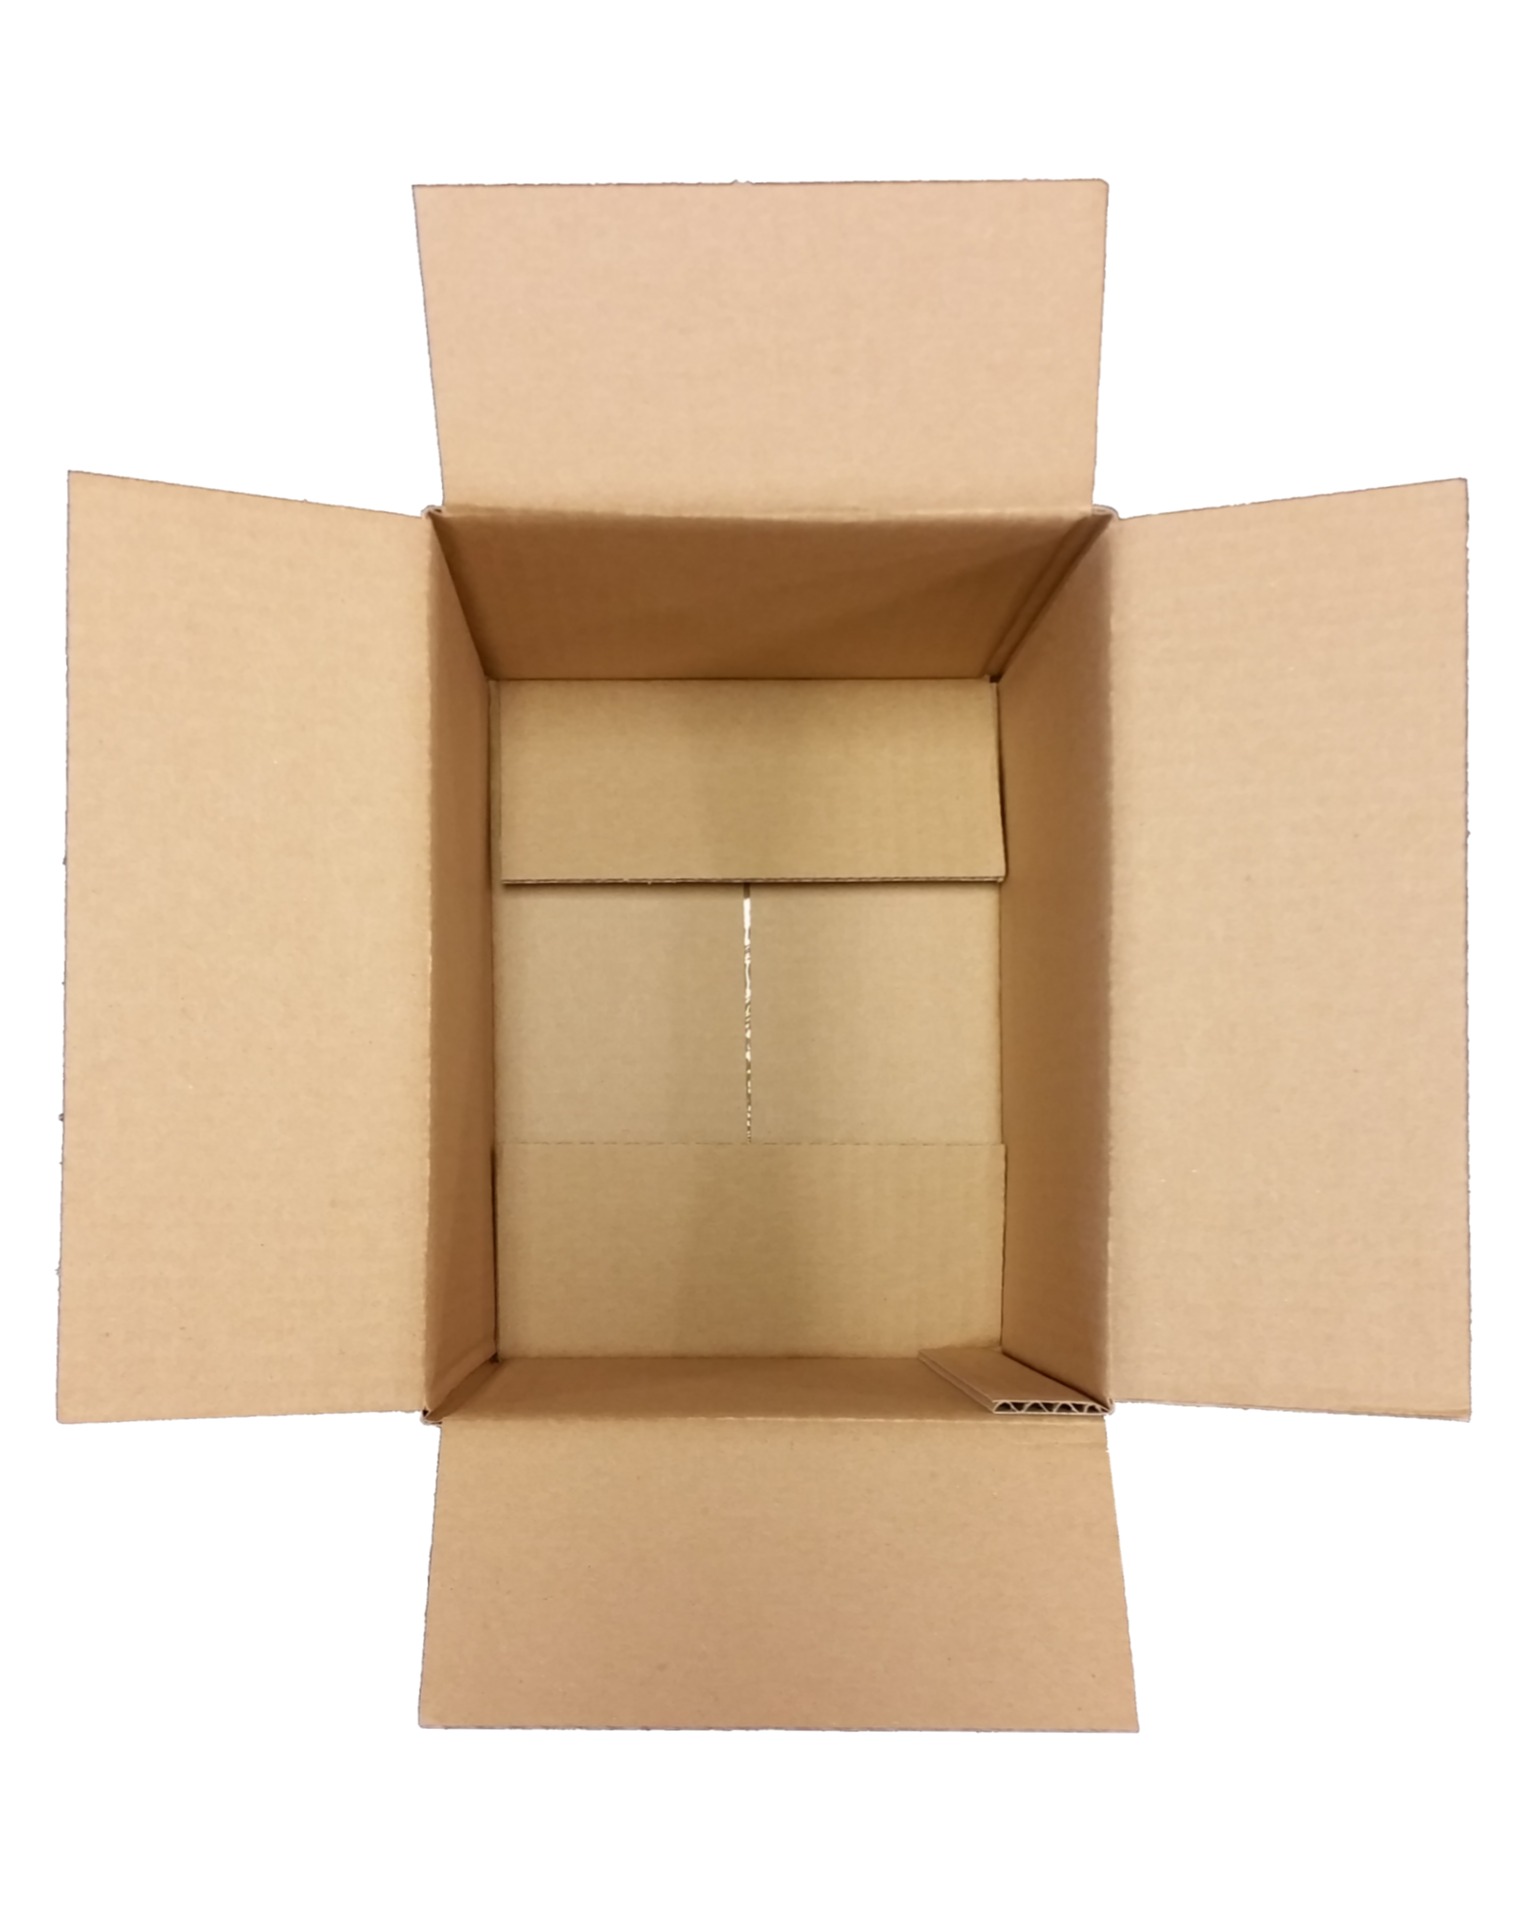 Kartony klapowe – idealne rozwiązanie dla domu i firmy